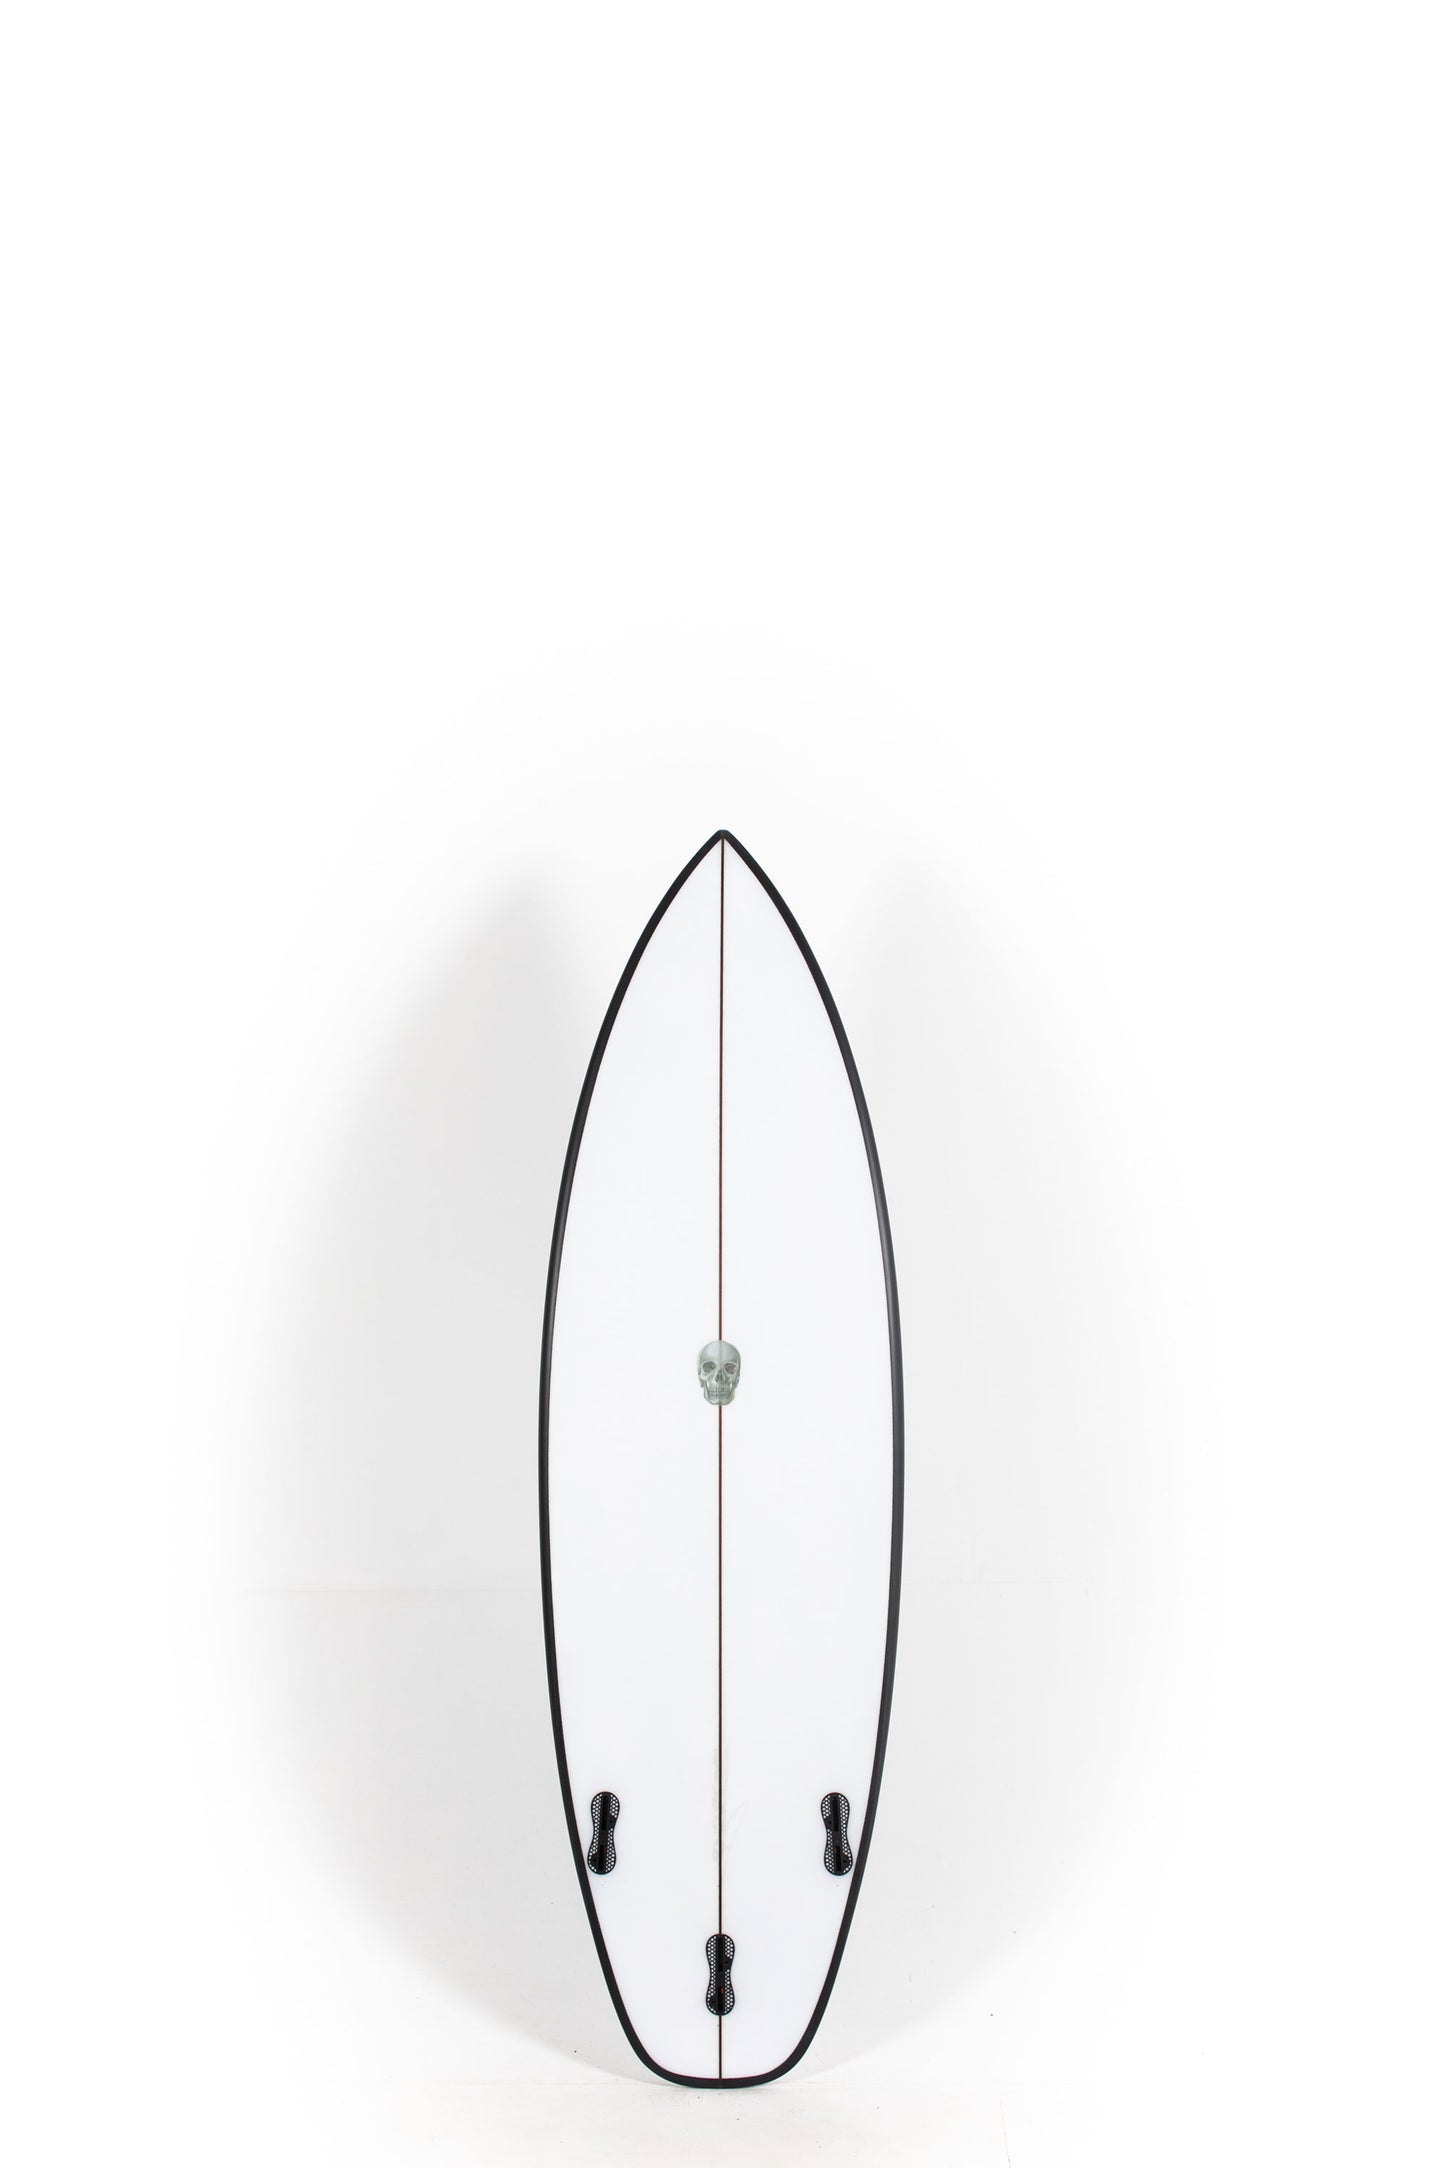 Pukas Surf Shop - Christenson Surfboards - OP1 - 5'6" x 19 x 2 3/8 x 26,23L - CX04799